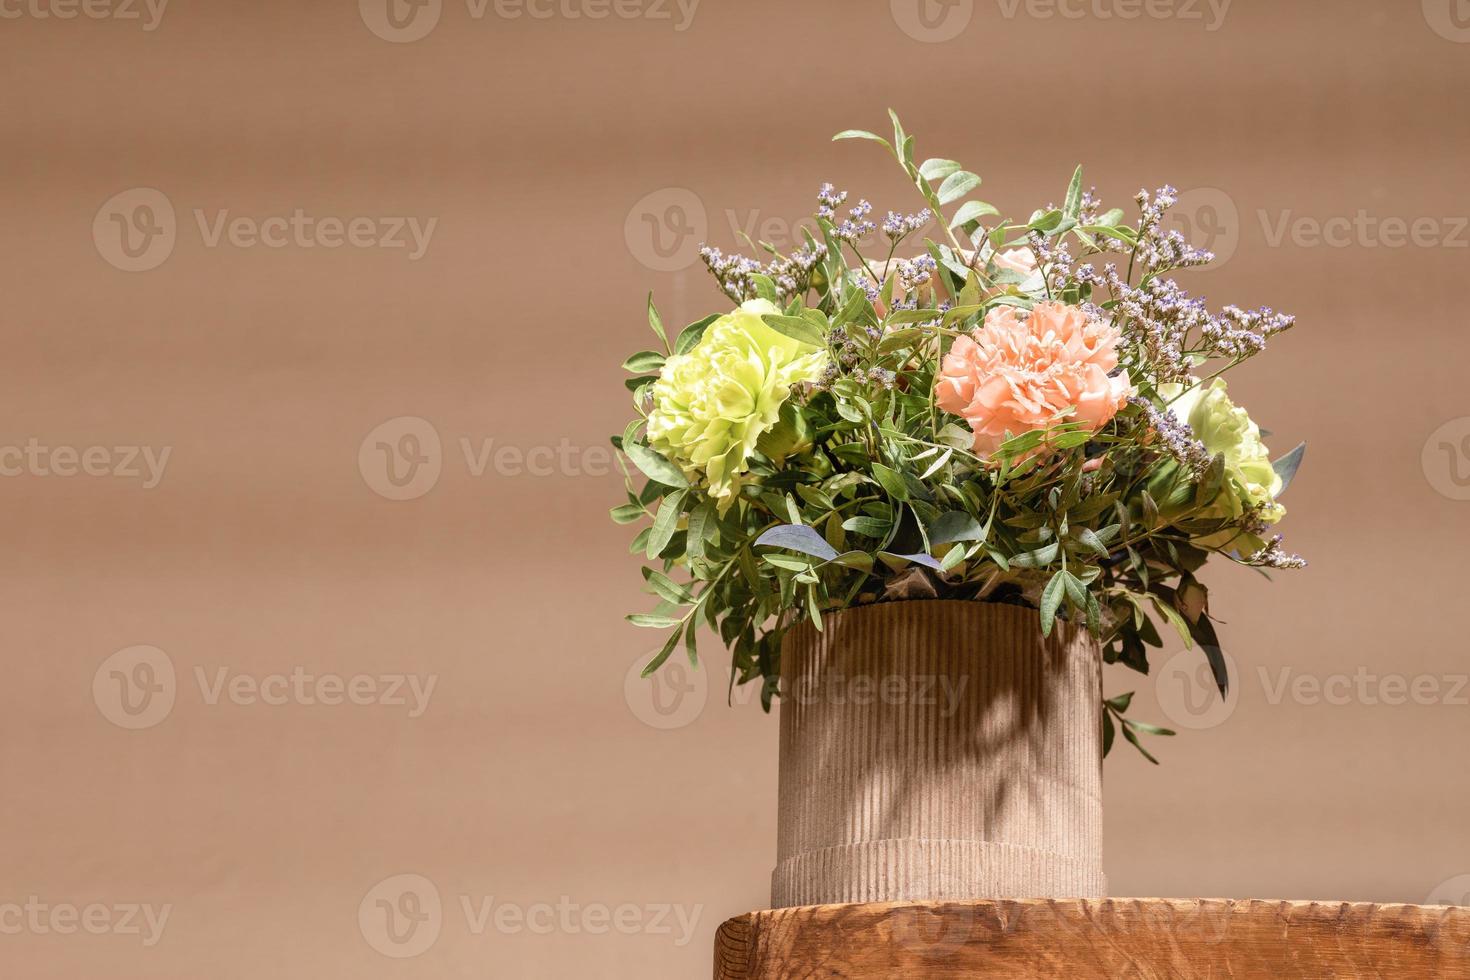 composición ecológica con ramo de flores en jarrón de cartón diy sobre una mesa de madera antigua en beige con sombras. foto